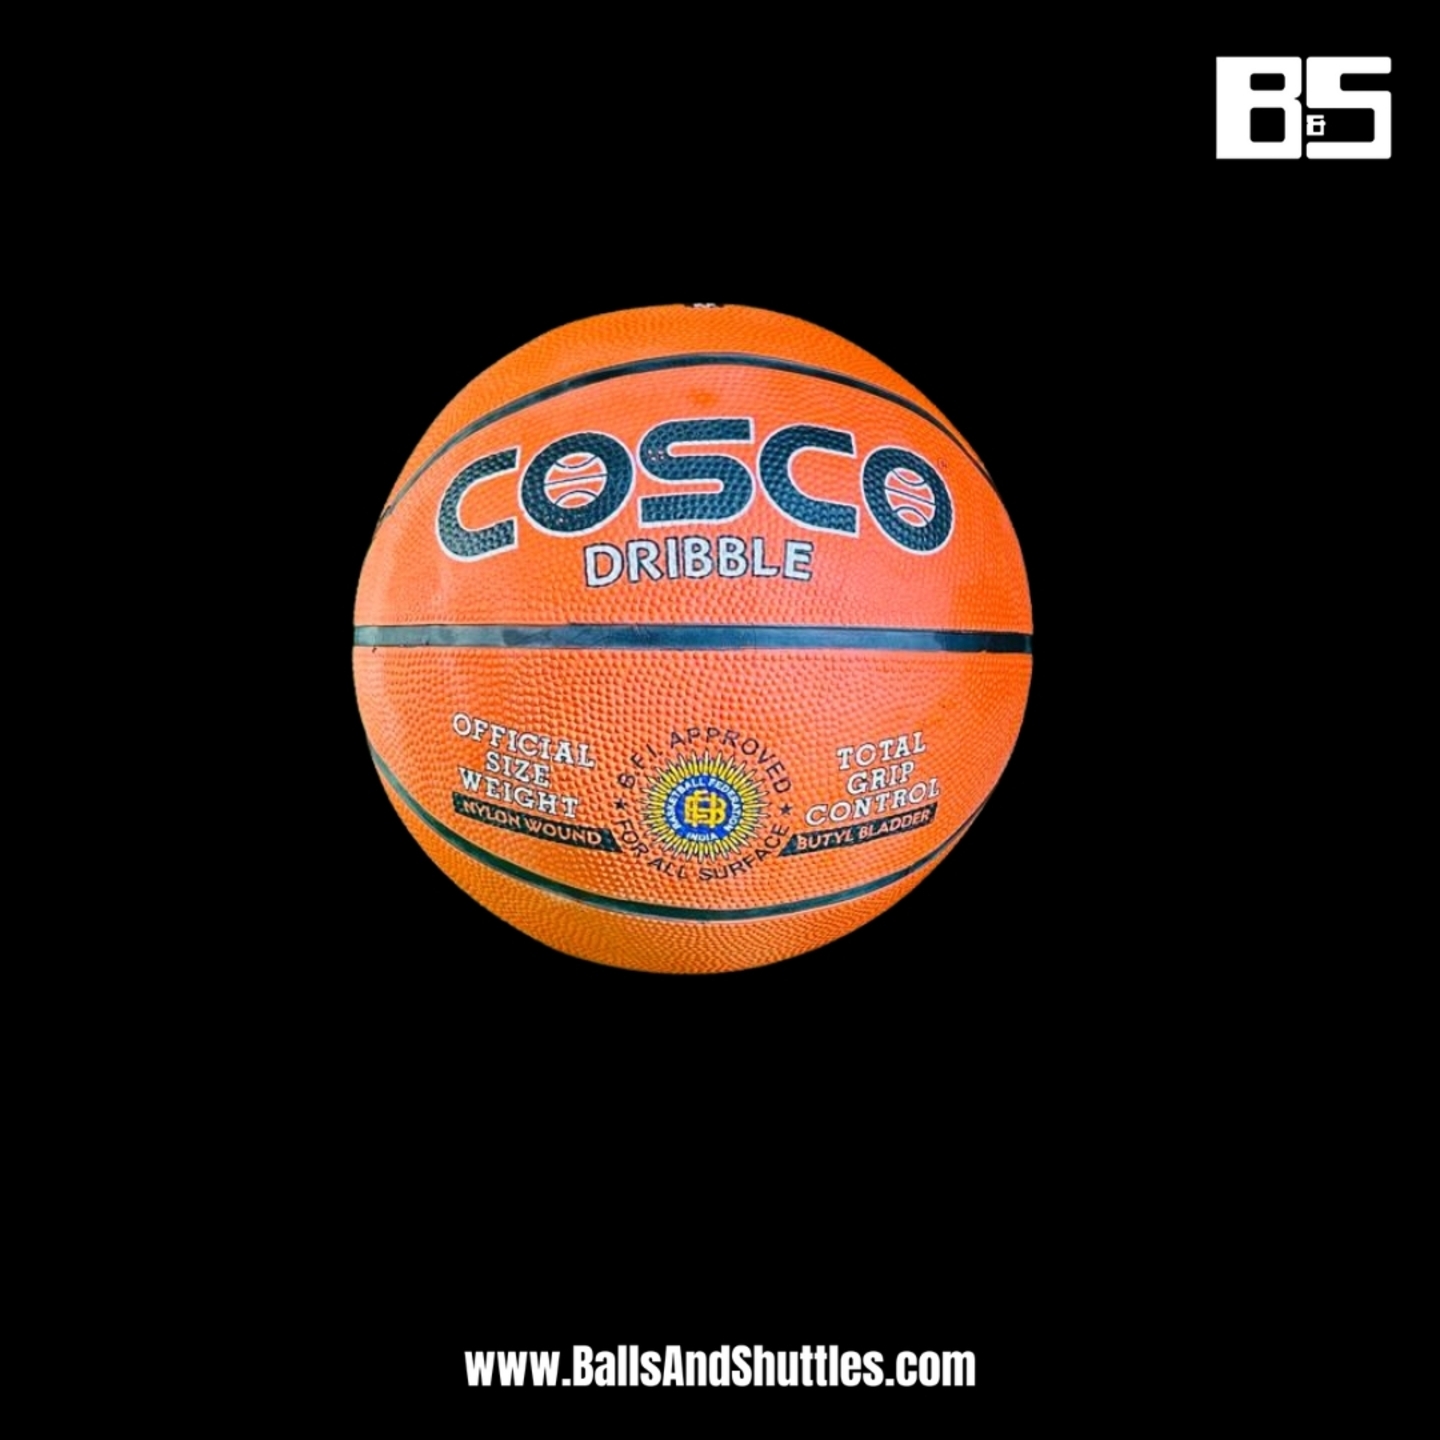 COSCO DRIBBLE BASKETBALL | COSCO SIZE 6 BASKETBALL | COSCO BASKETBALL